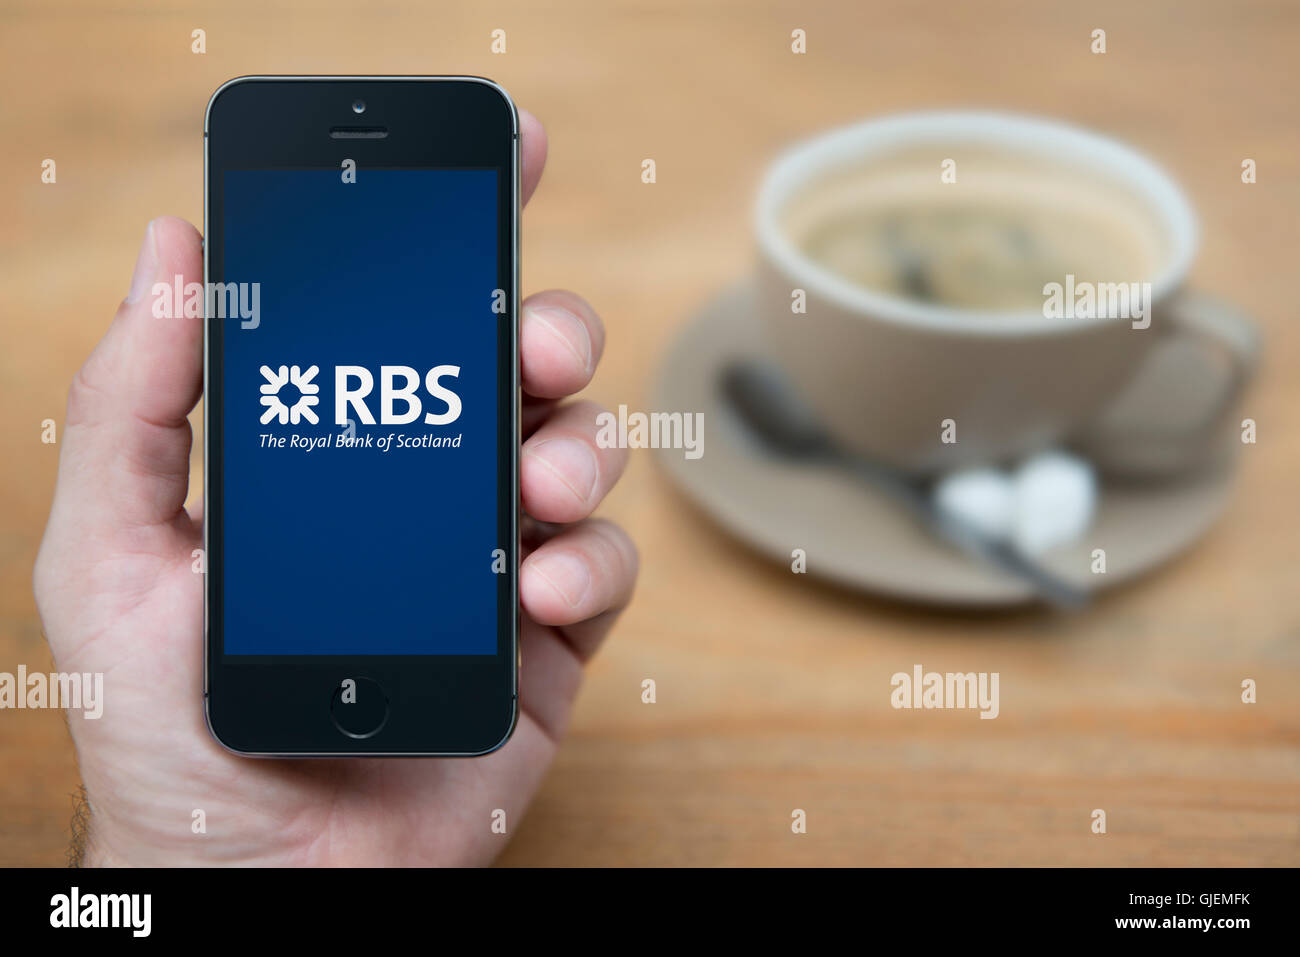 Un homme se penche sur son iPhone qui affiche le logo RBS, tandis qu'assis avec une tasse de café (usage éditorial uniquement). Banque D'Images